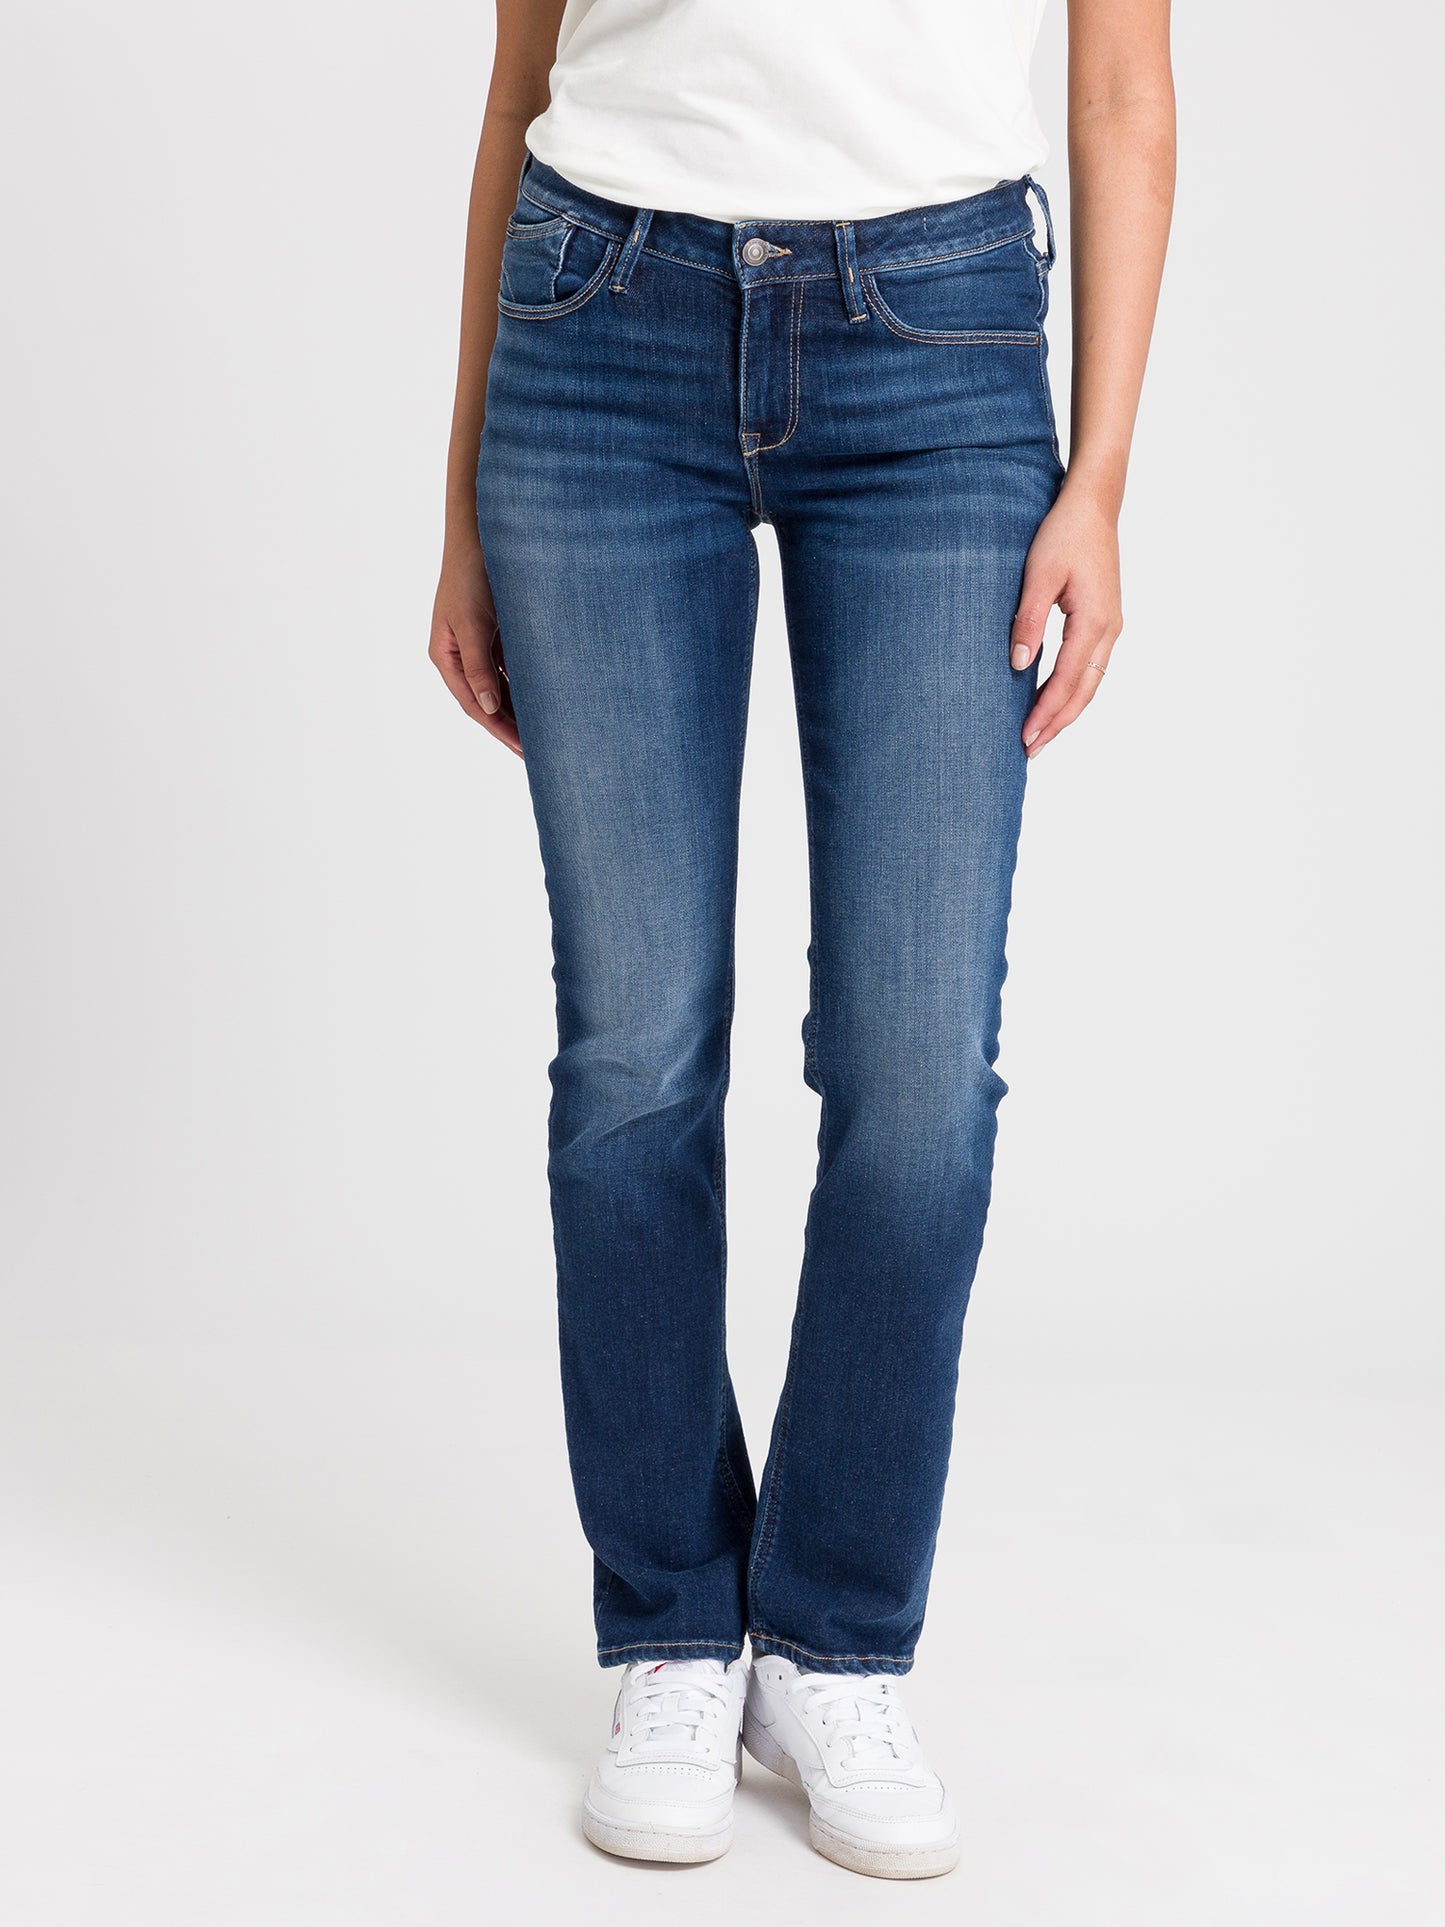 Rose women's jeans regular fit high waist medium blue